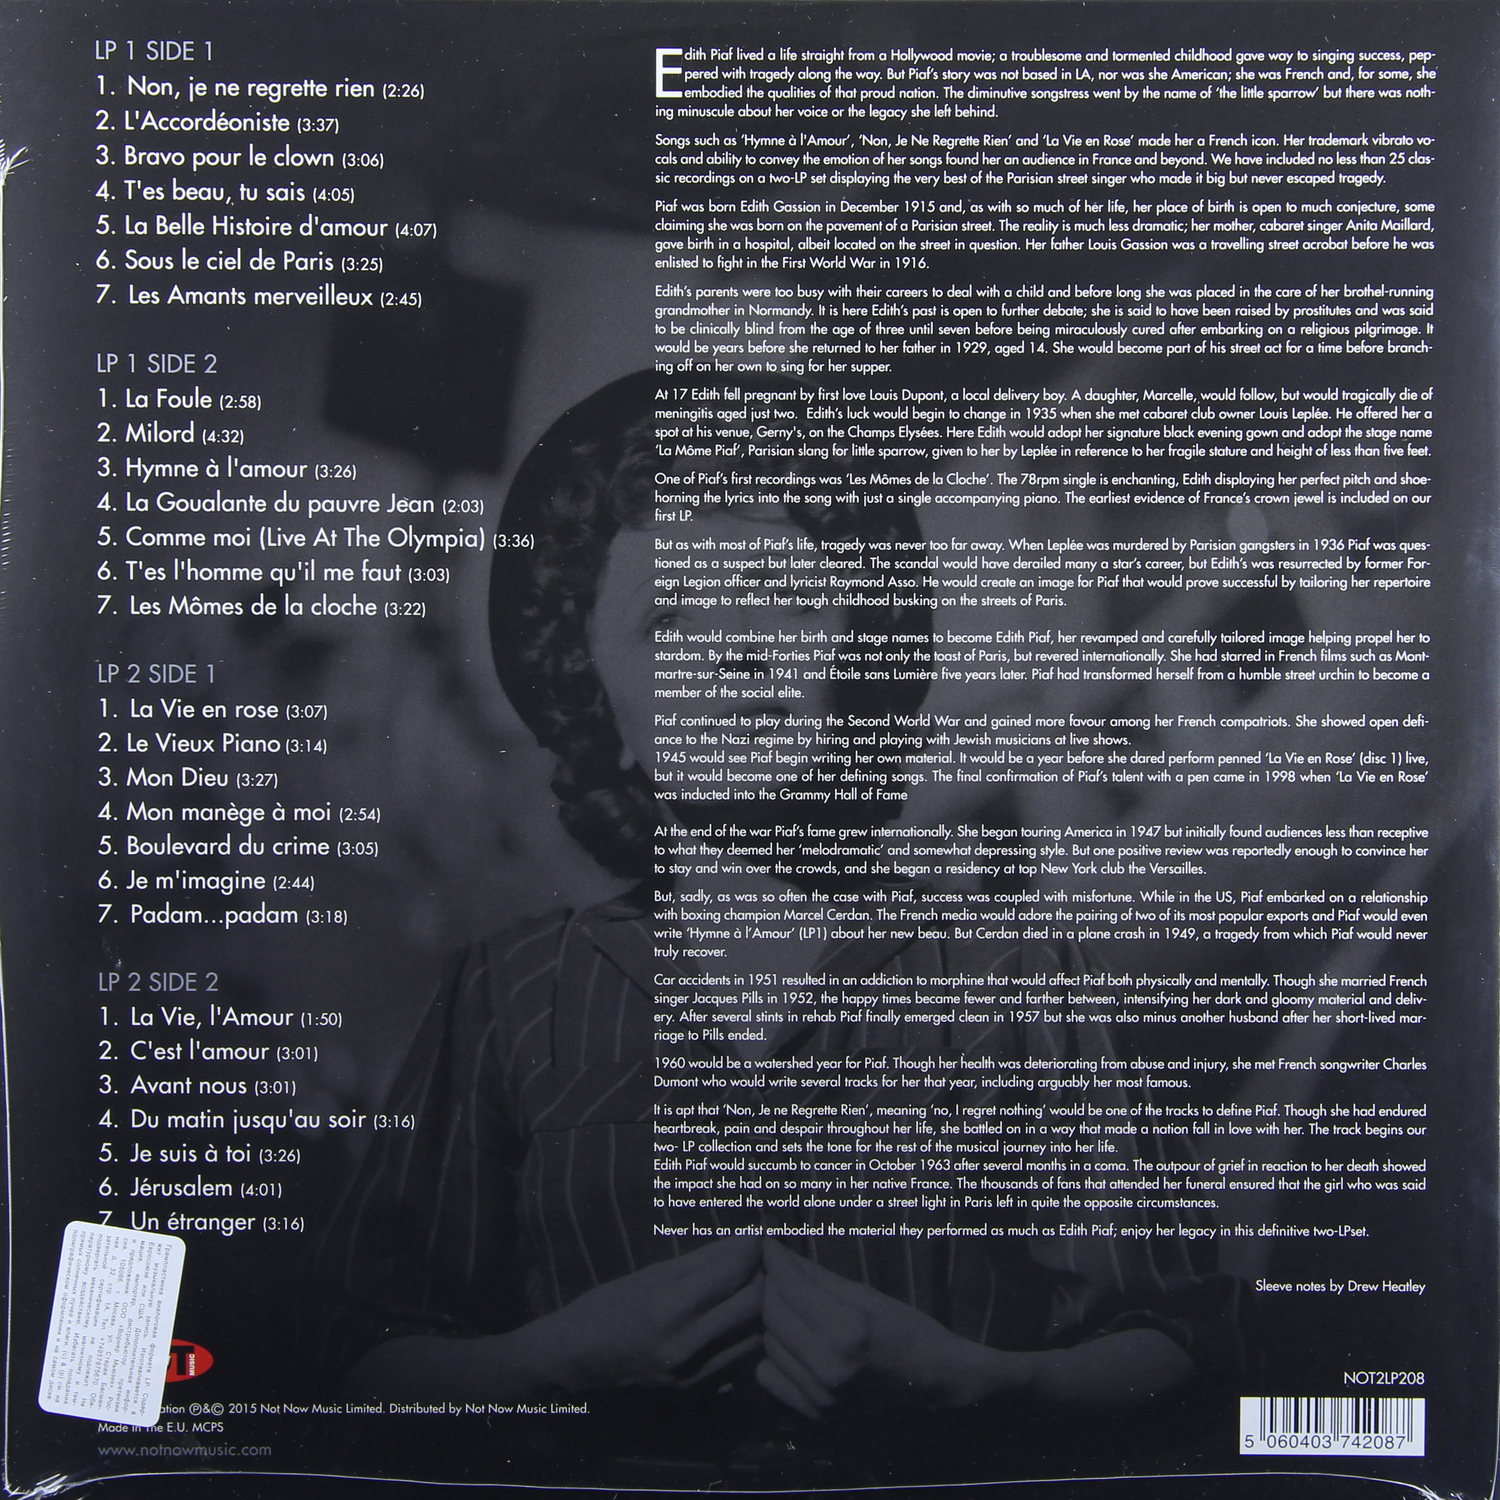 Пластинка Эдит Пиаф. Edith Piaf Формат LP пластинка. Пластинки Эдит Пиаф фото. Edith Piaf 2 EMI Vinyl.